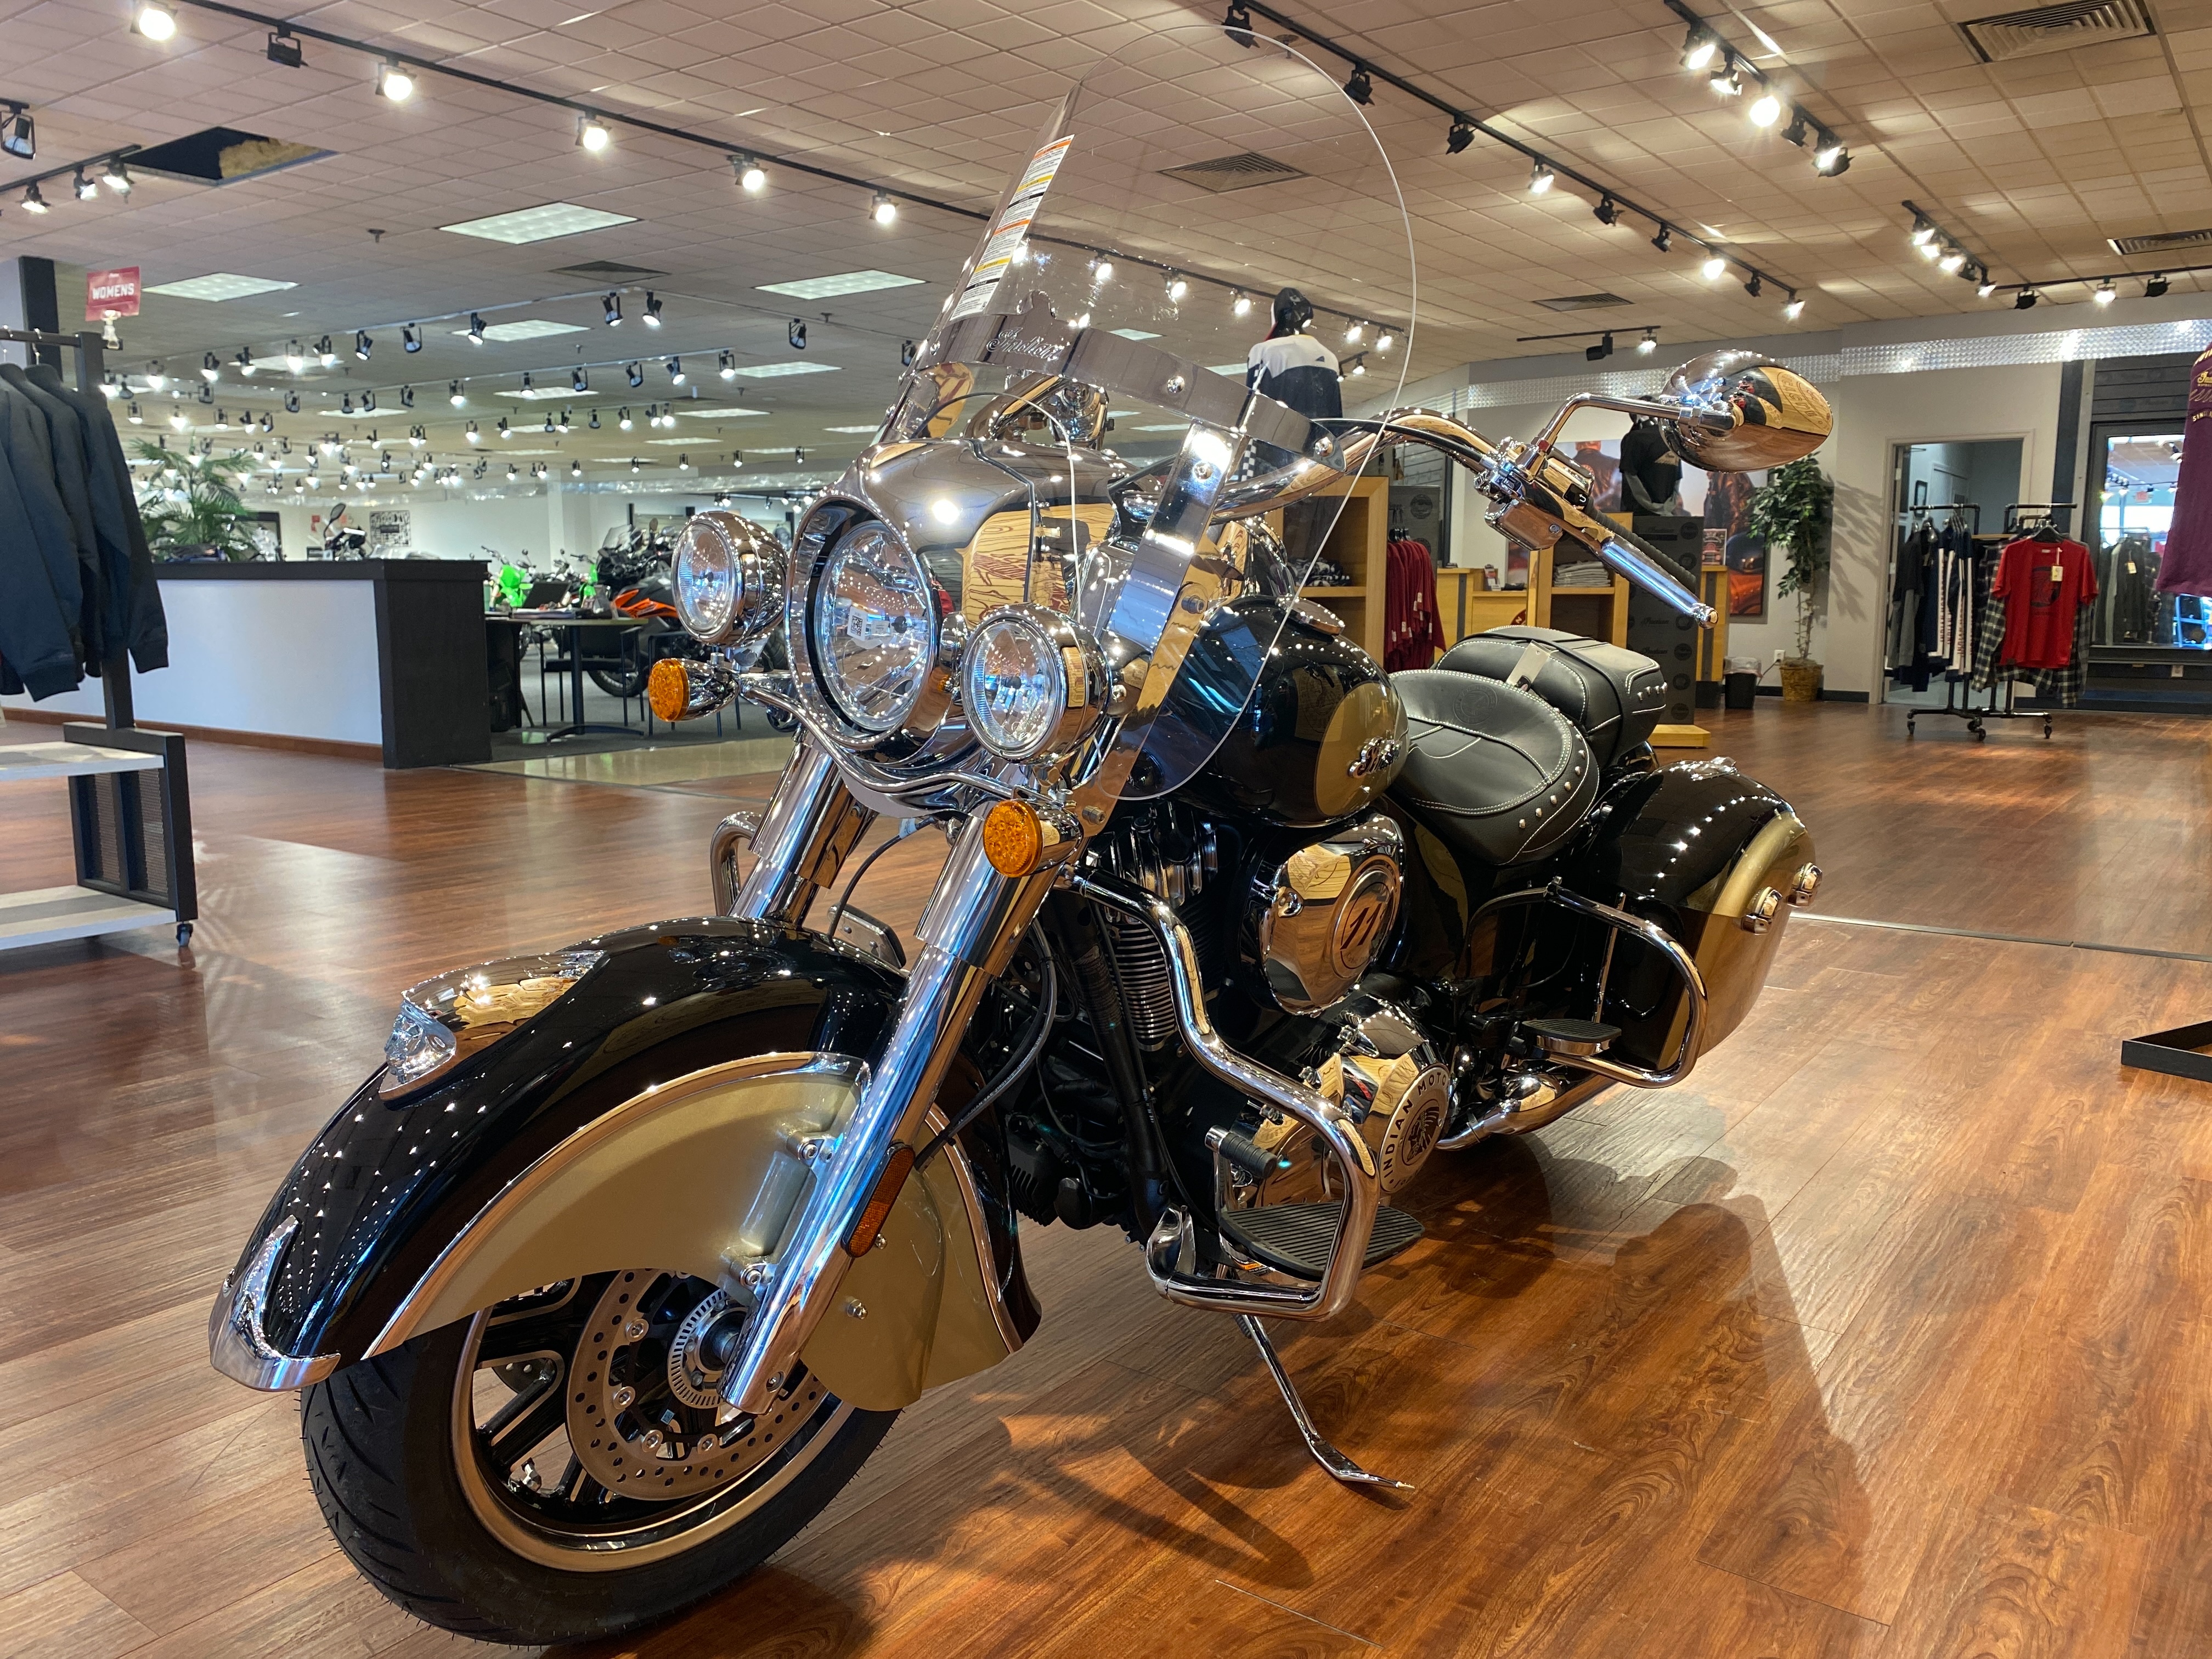 2022 Indian Springfield Base at Sloans Motorcycle ATV, Murfreesboro, TN, 37129